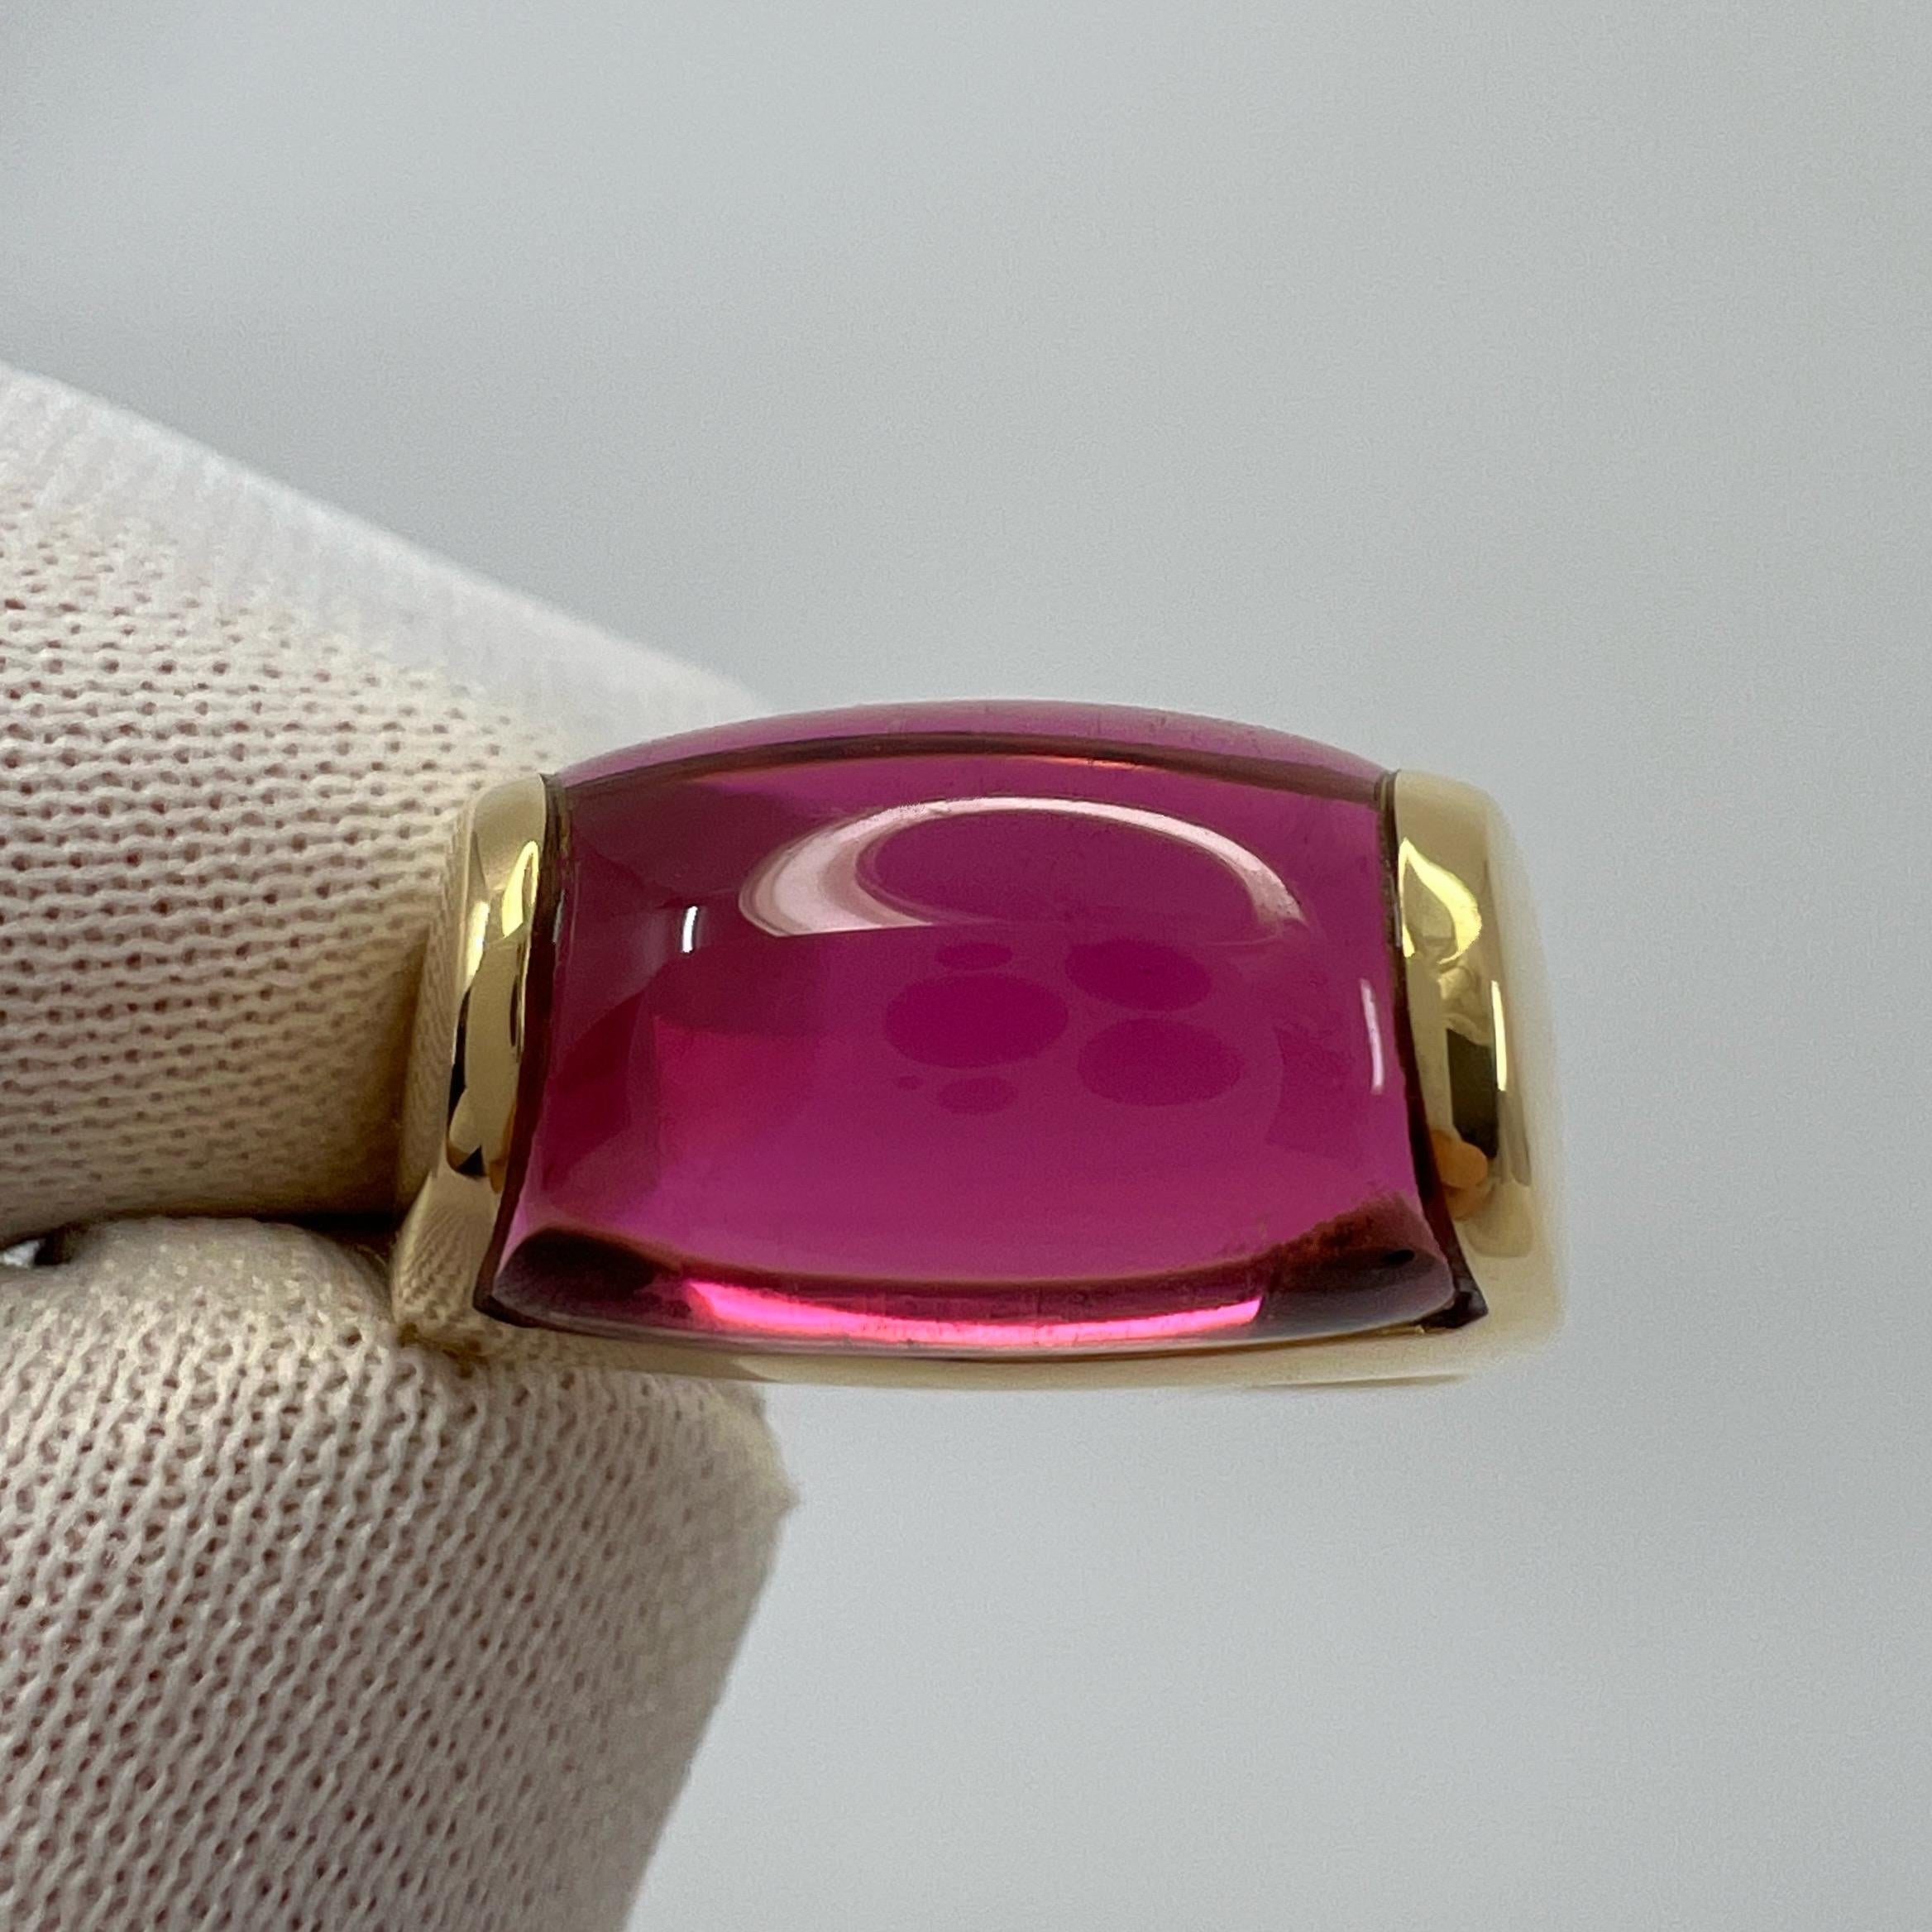 Rare Bvlgari  Tronchetto 18k Yellow Gold Rubellite Pink Tourmaline Ring with Box 3